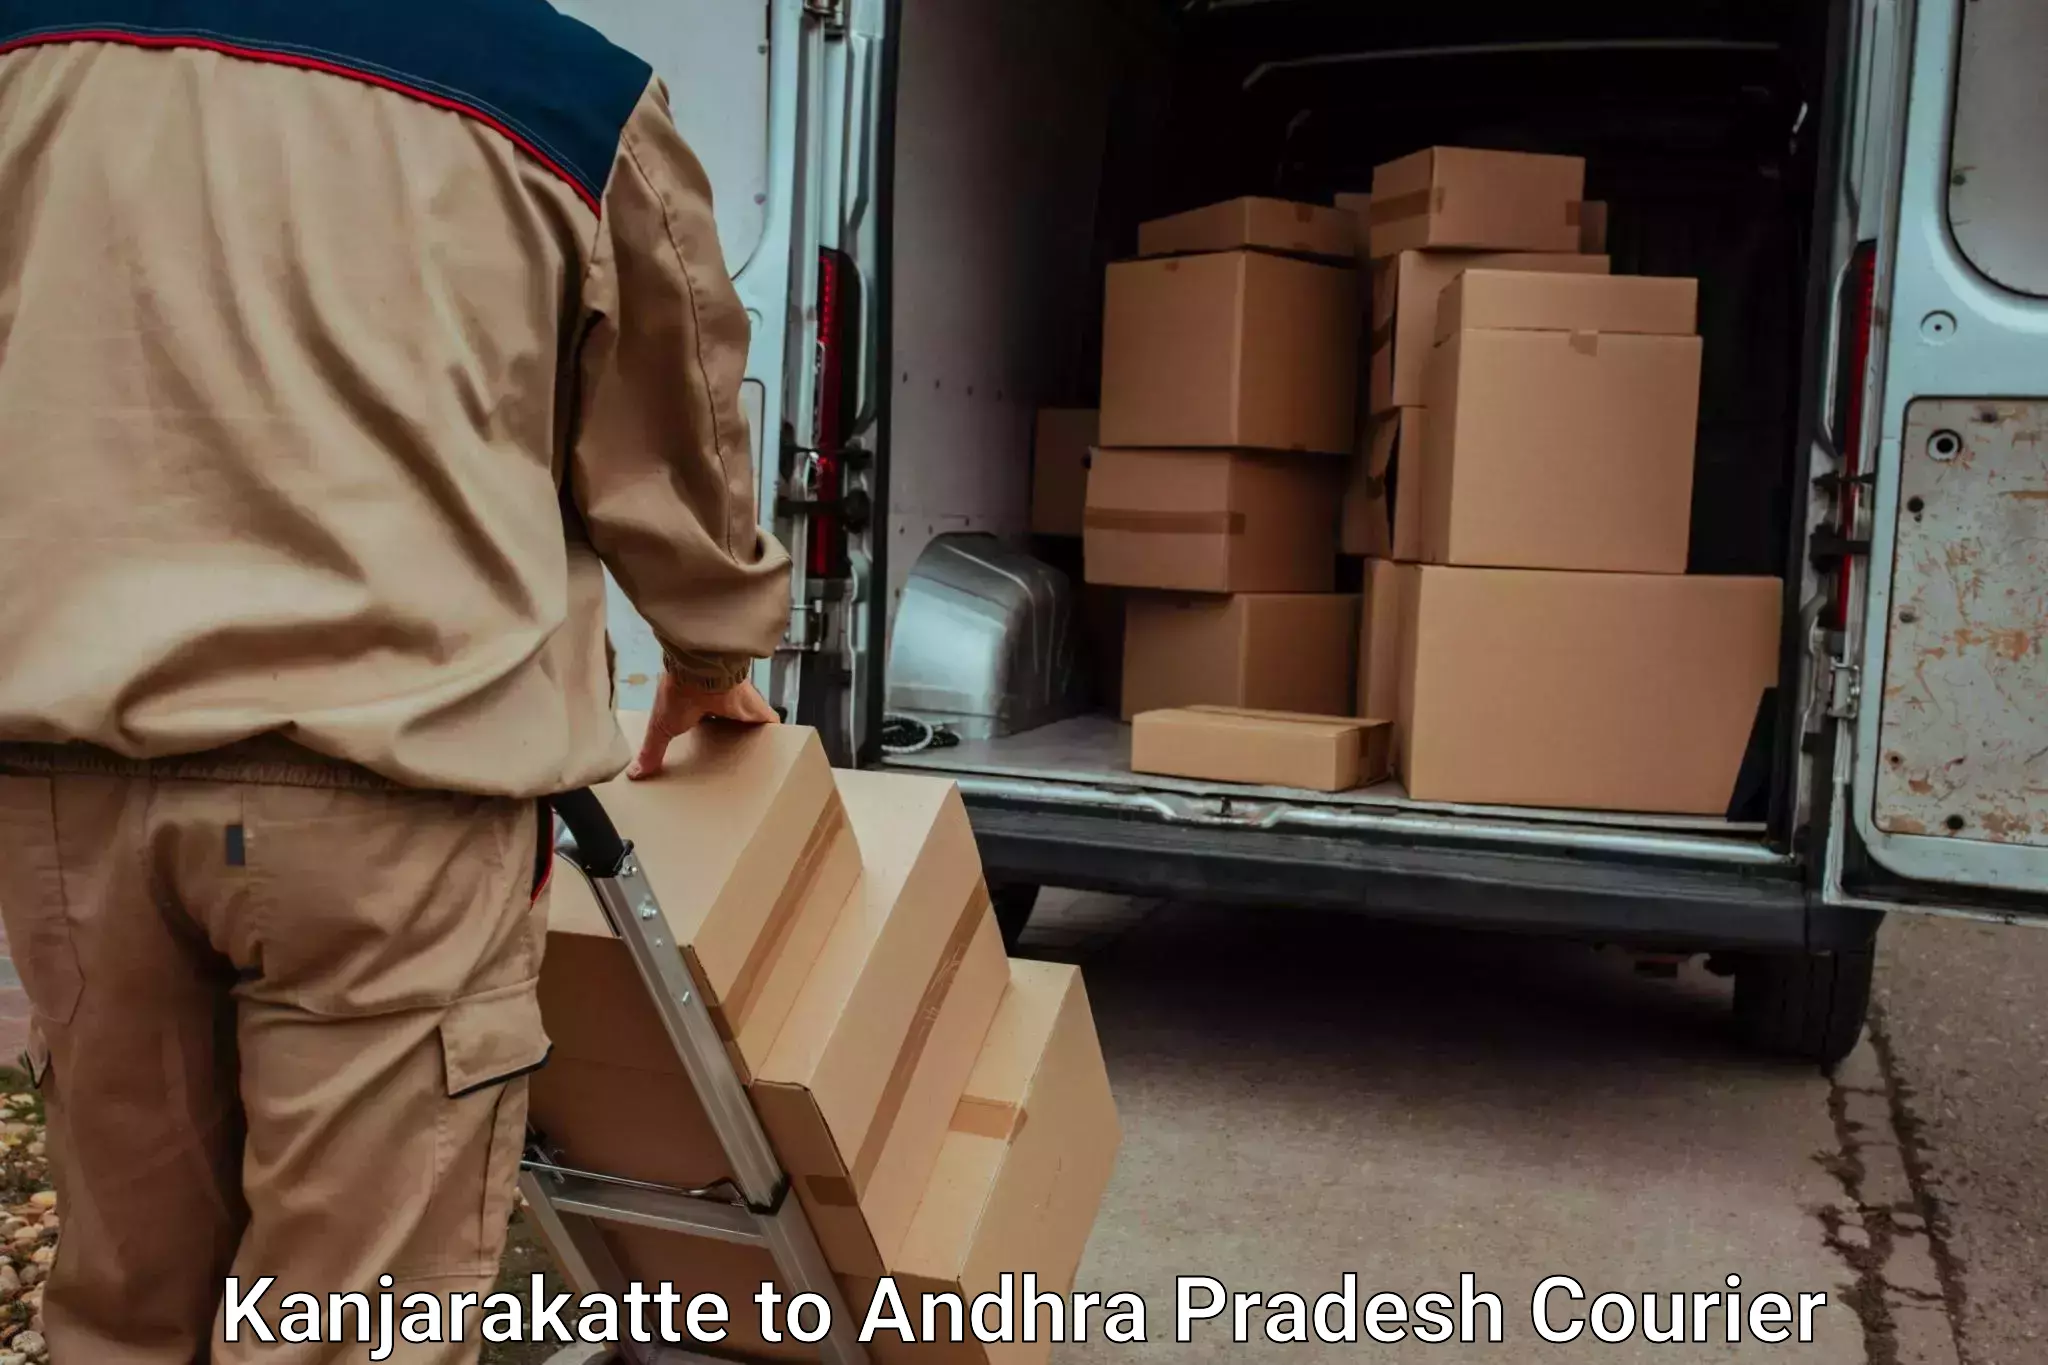 Baggage transport innovation Kanjarakatte to Srikakulam